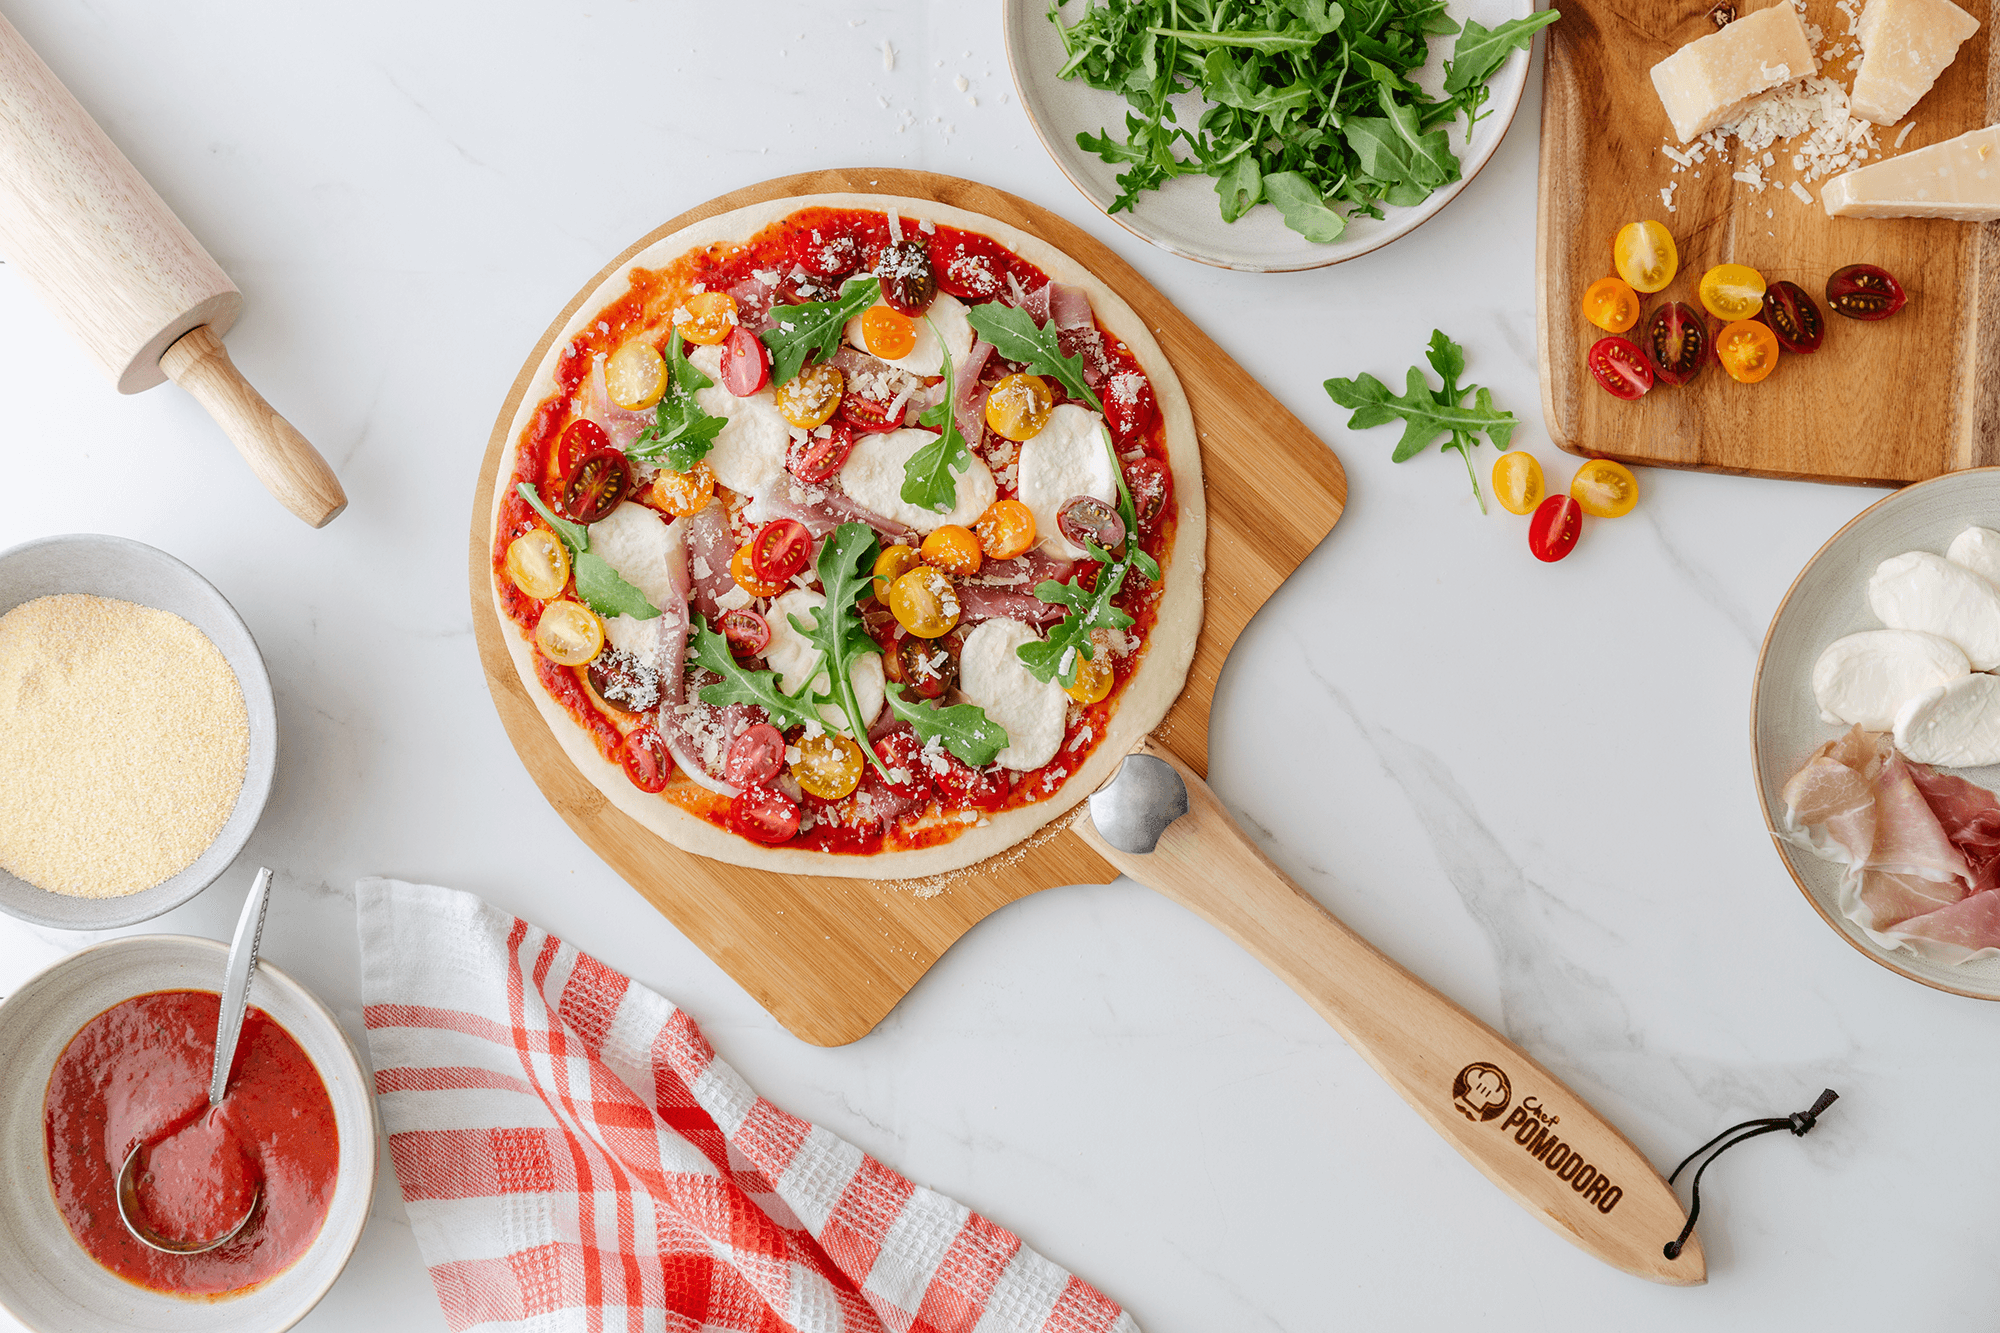 8-Inch Cast Aluminum Premium Pizza Pan Gripper – Chef Pomodoro